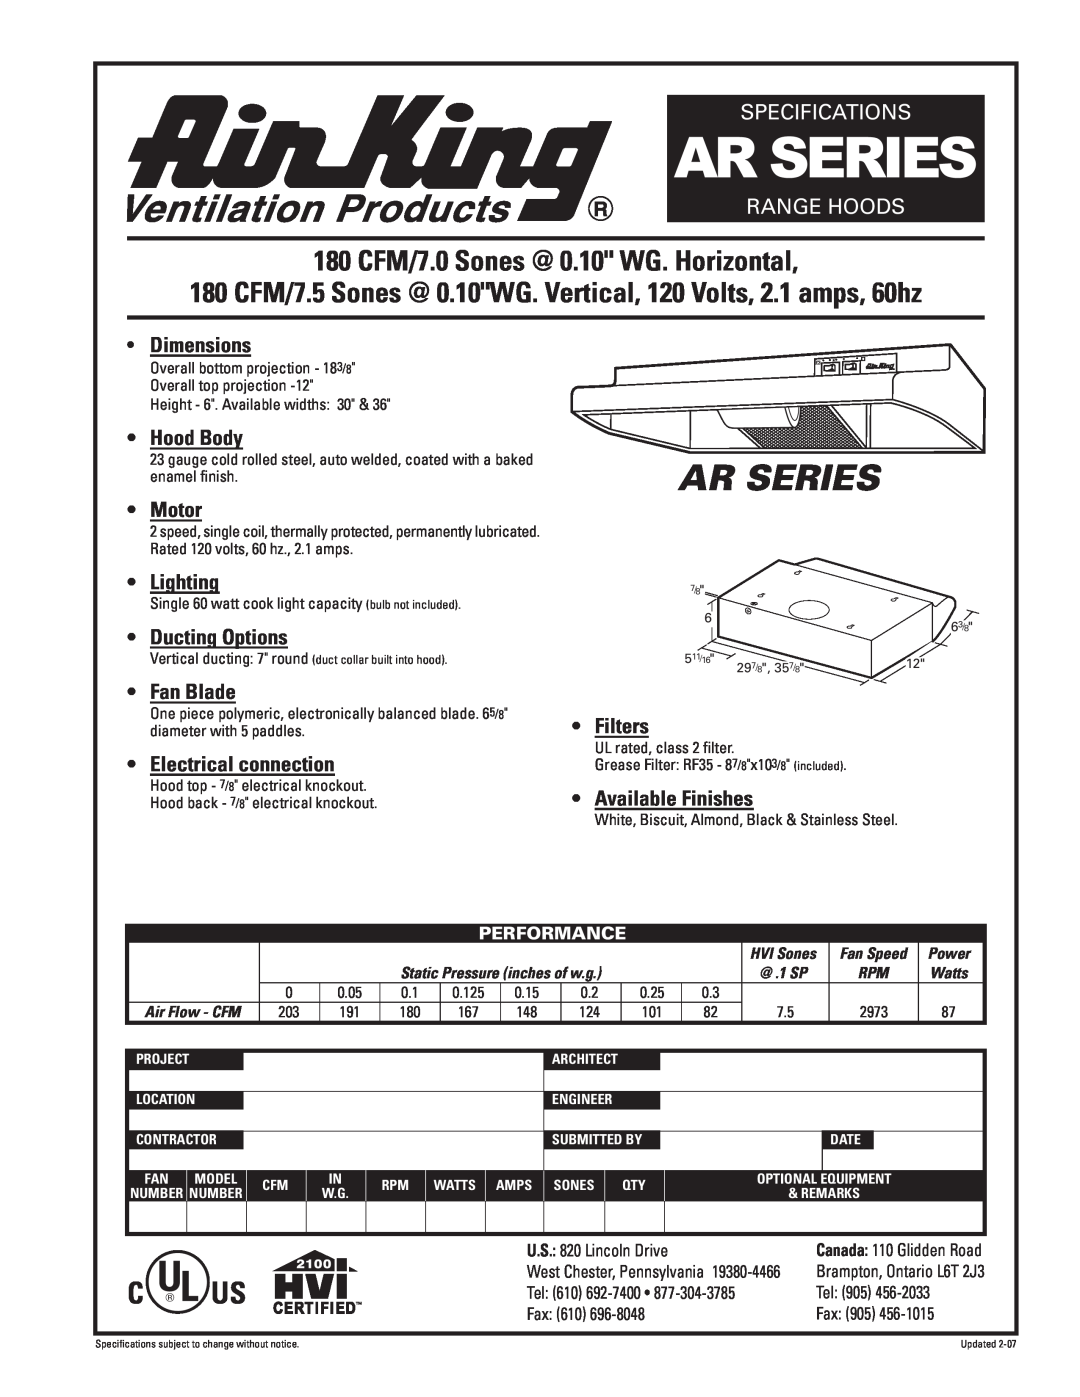 Air King AR Series specifications Ar Series, 180 CFM/7.0 Sones @ 0.10 WG. Horizontal, Specifications, Range Hoods, Motor 